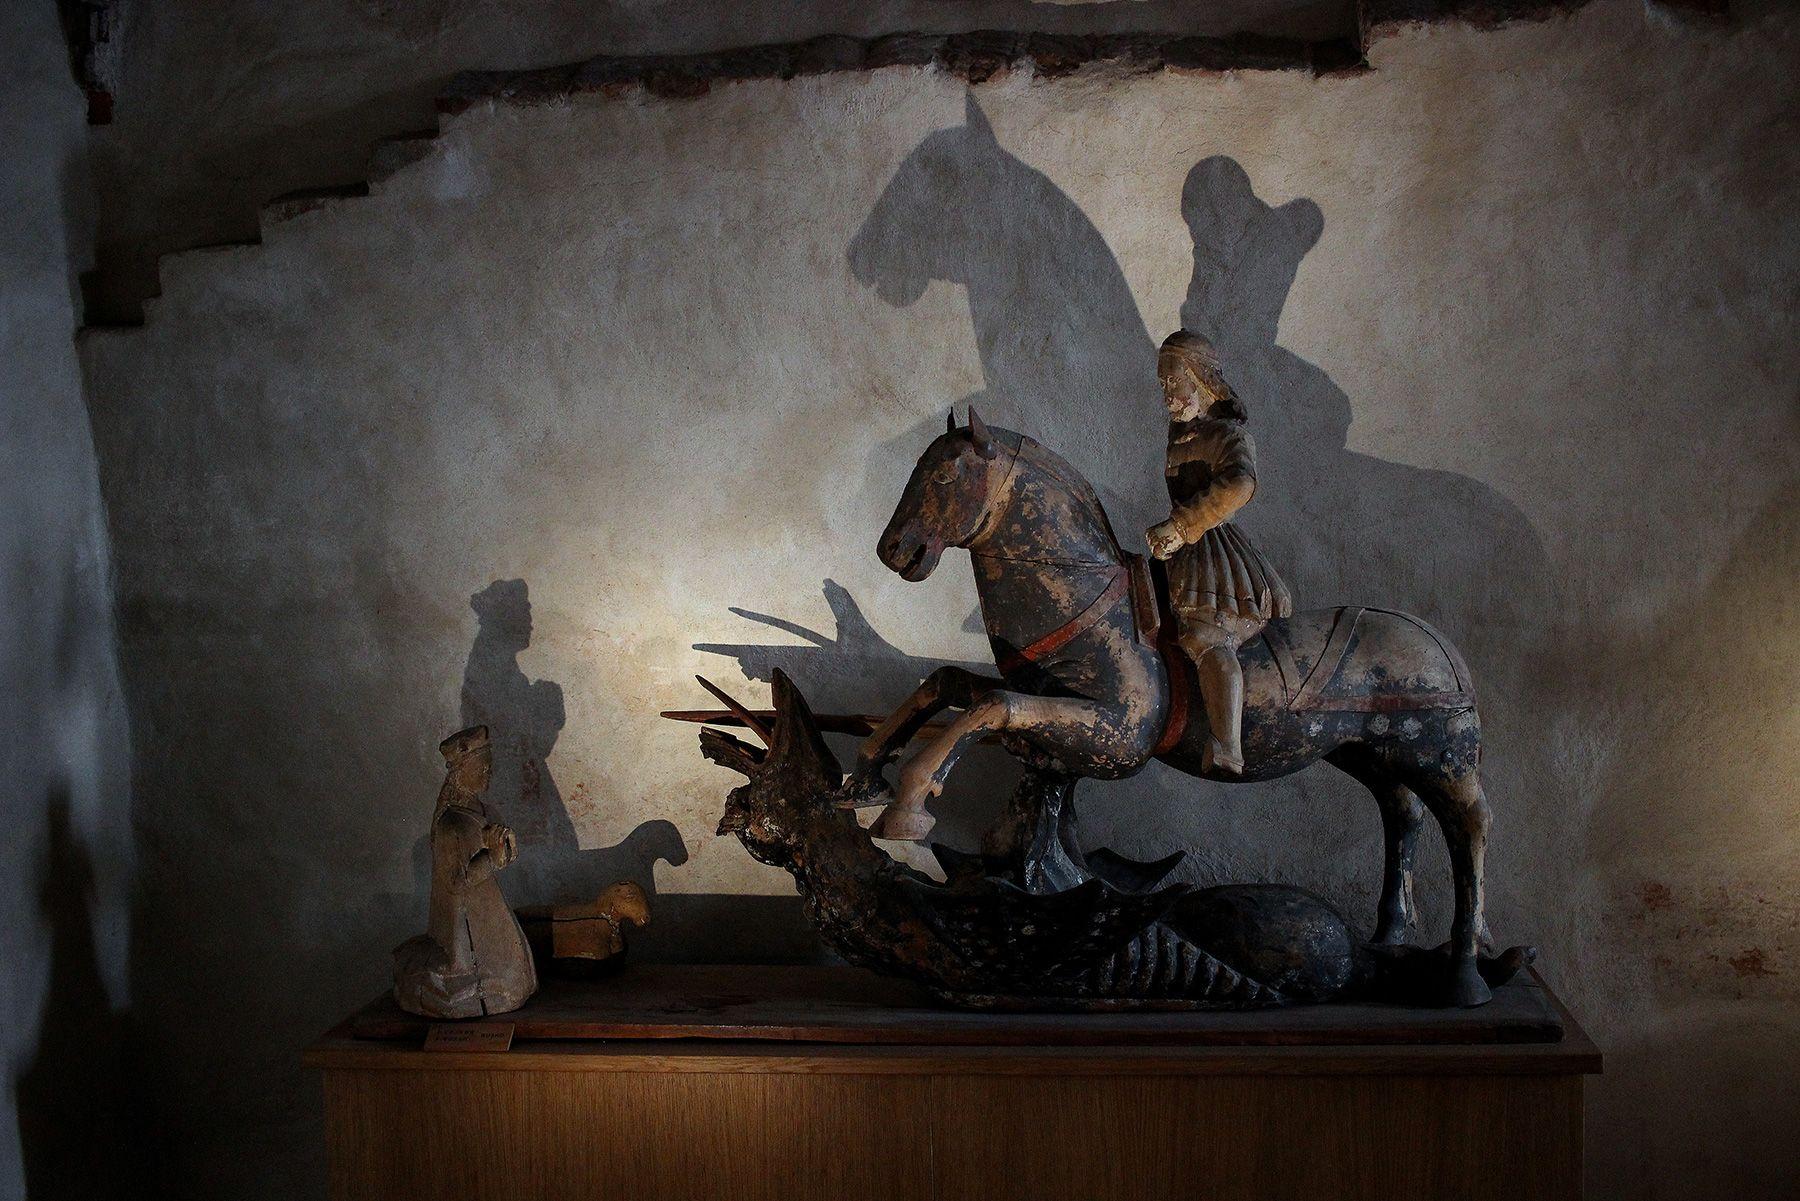 Metallinen pieni patsas, joka esittää laukkaavaa hevosta. Hevosen selässä on ritari ja hevosen edessä on polvillaan hahmo ja lammas.